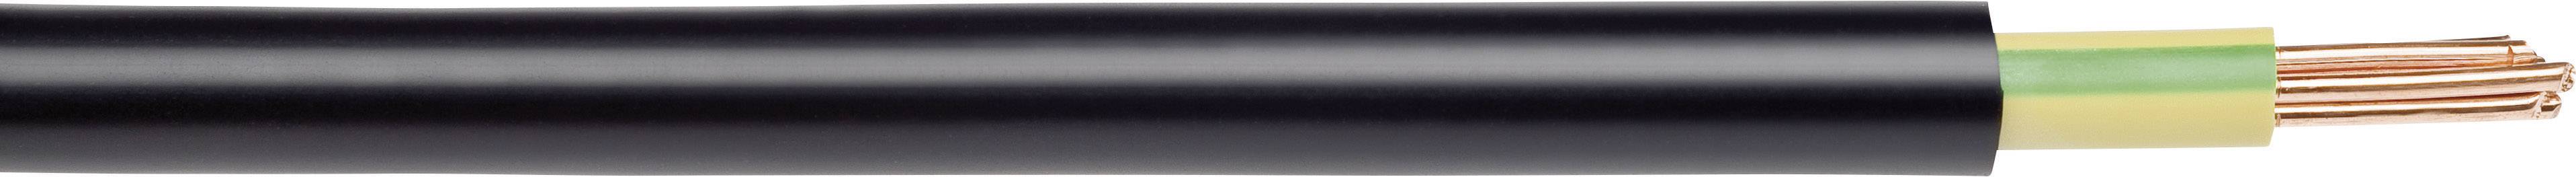 lapp 1550207 earth cable nyy o 1 x 25 mm² black 500 m conrad com